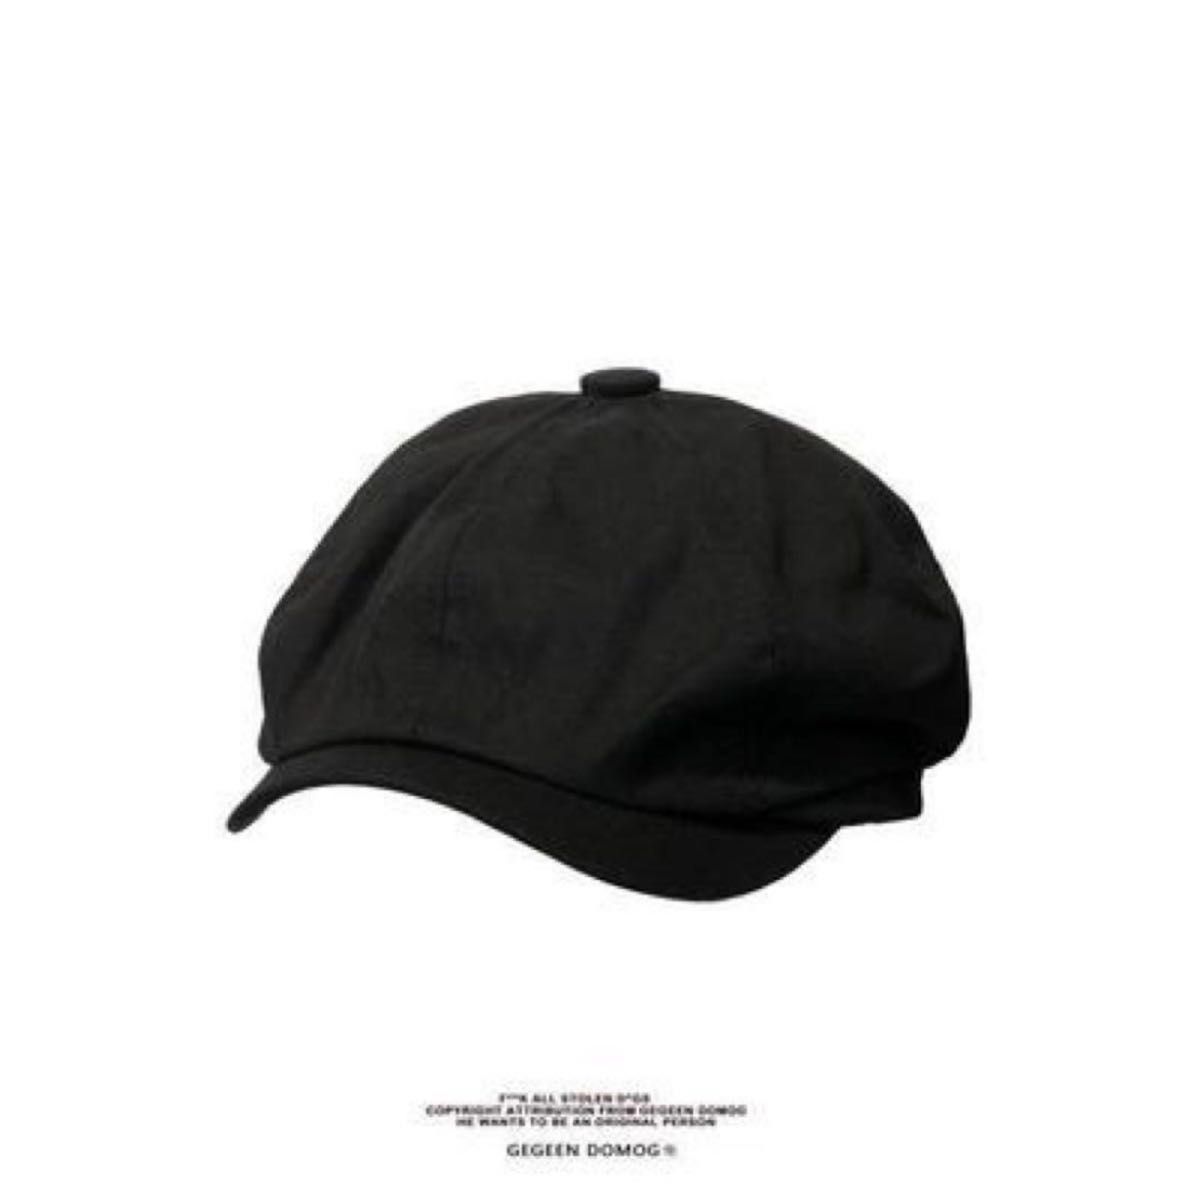 キャスケット ハンチング ユニセックス　黒 ブラック 帽子 ハット   ハンチング帽